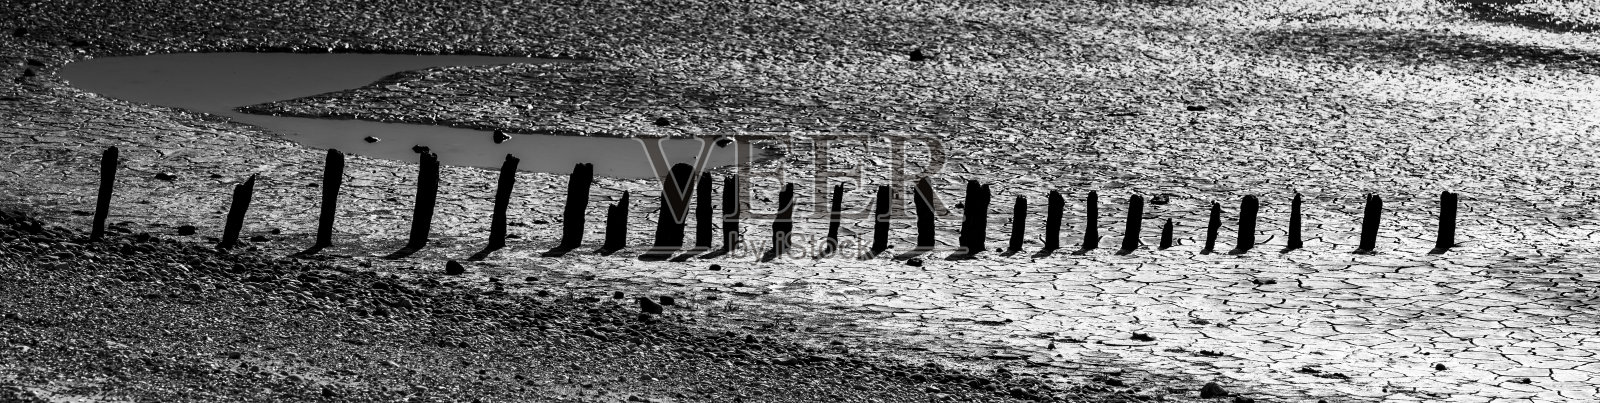 斯内蒂舍姆泥滩照片摄影图片